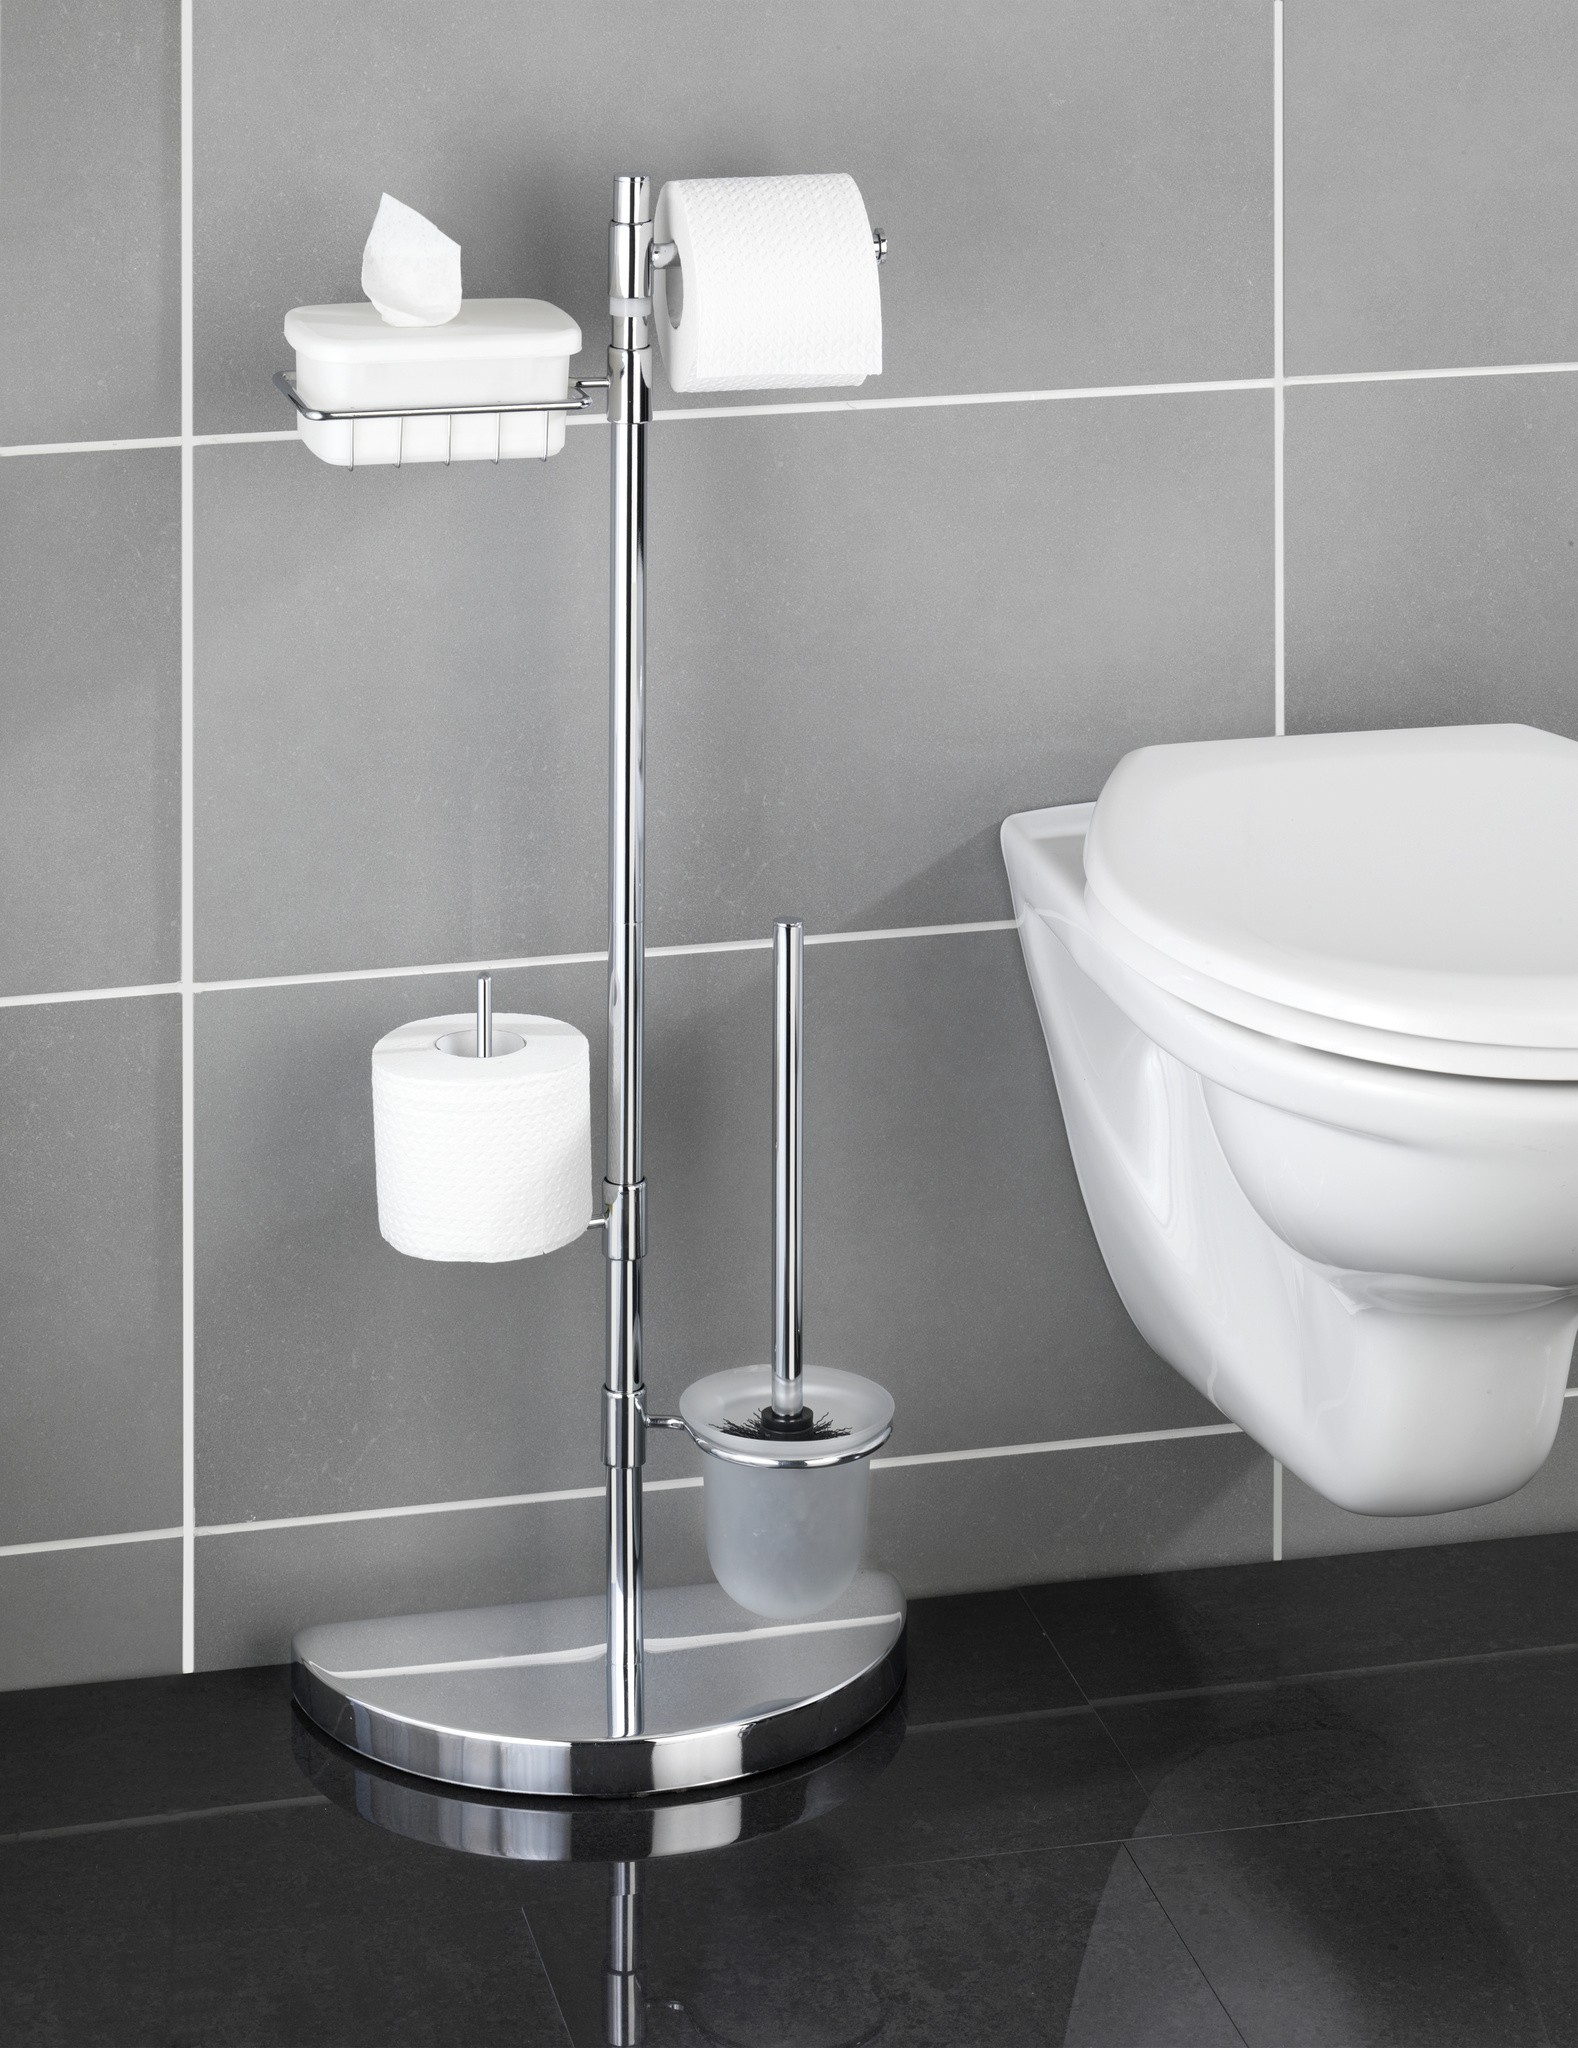 Raumspar WC-Center, WC-Garnitur mit Ersatzrollen- und Feuchttücher-Halter  von WENKO jetzt kaufen bei